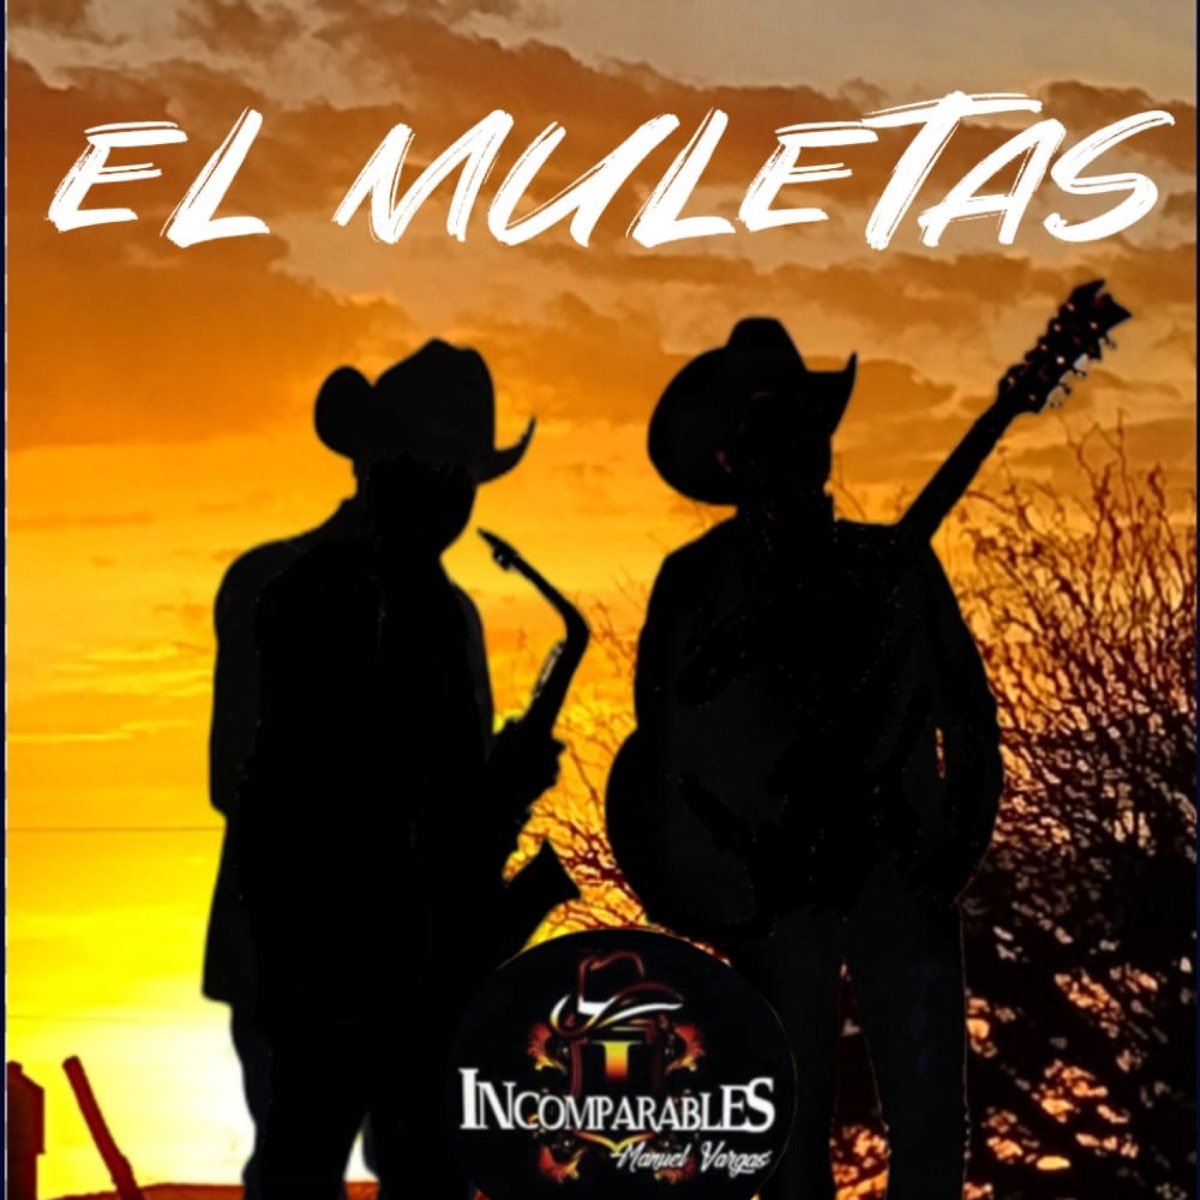 El Muletas - Single by Incomparables de Manuel Vargas on Apple Music